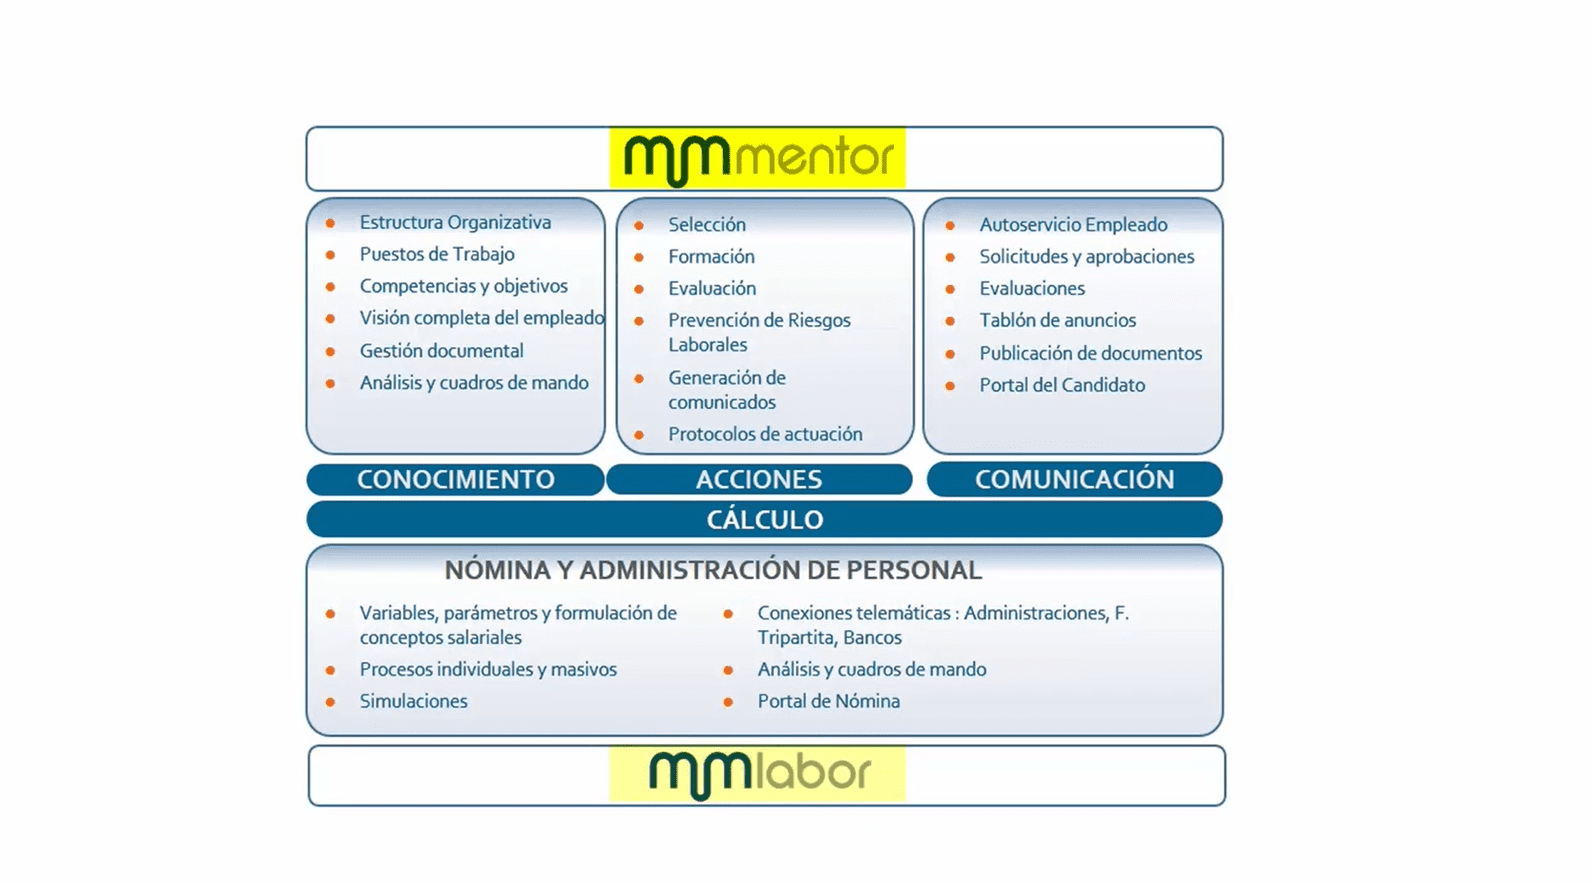 Mentor - Summar - Mentor integra la gestión de los procesos de RRHH (Selección, Formación y Evaluación), la PRL, y se puede integrar con la gestión de nómina.